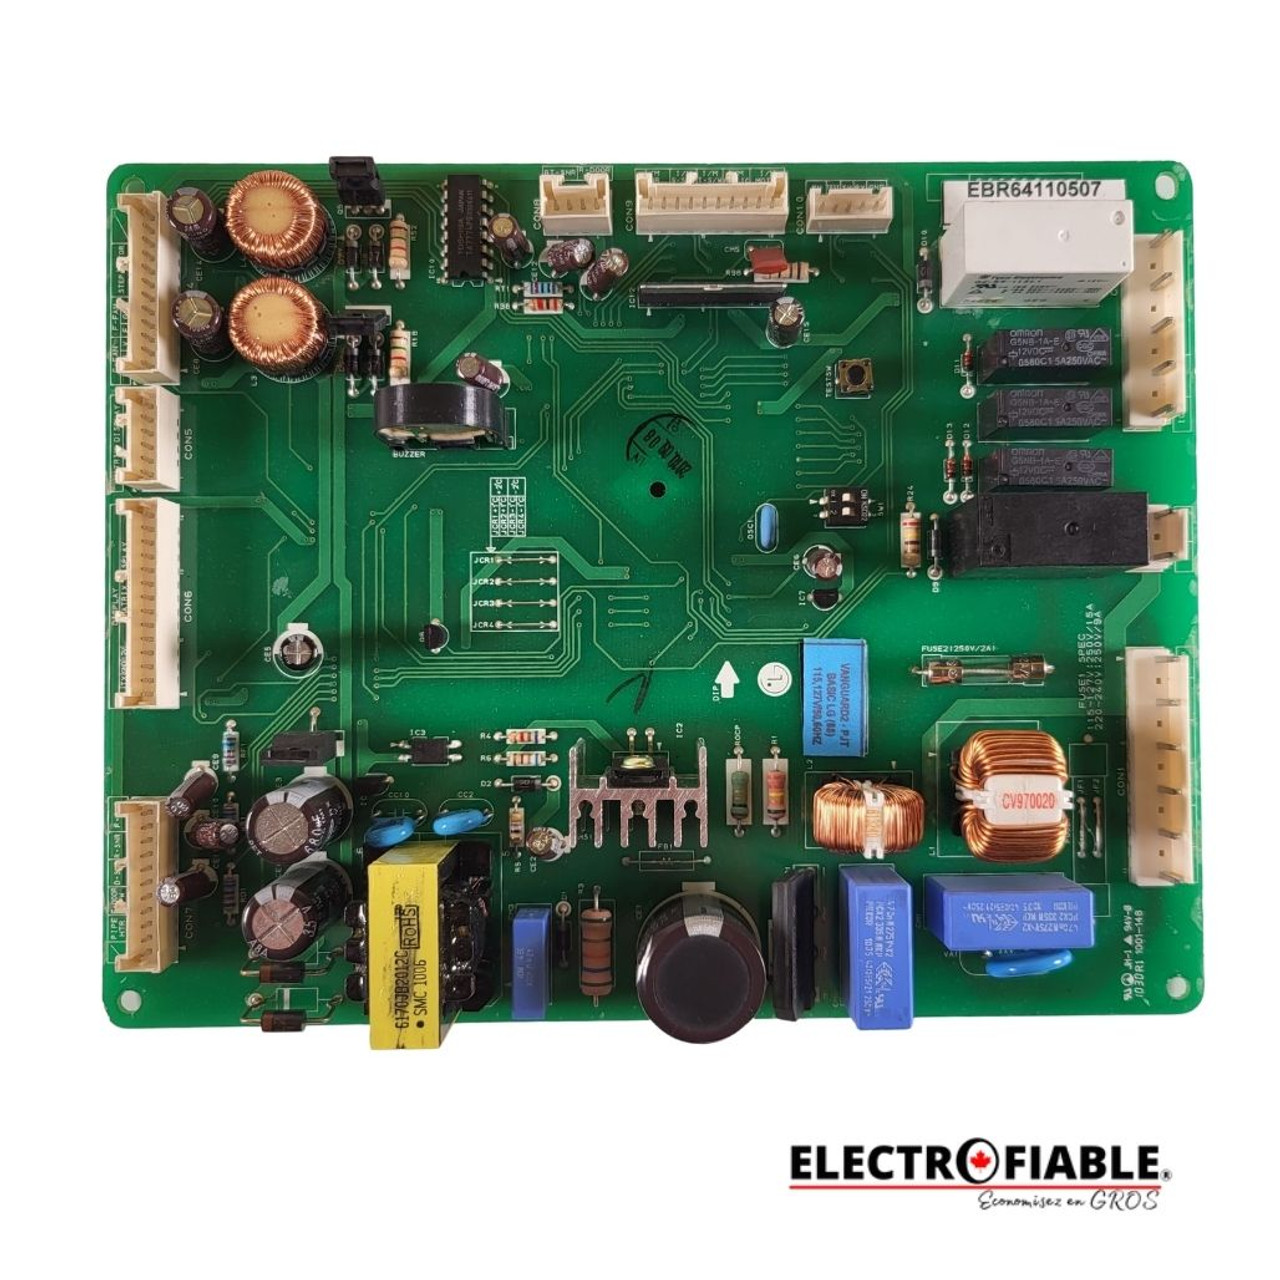 EBR64110507 Control board for LG refrigerator